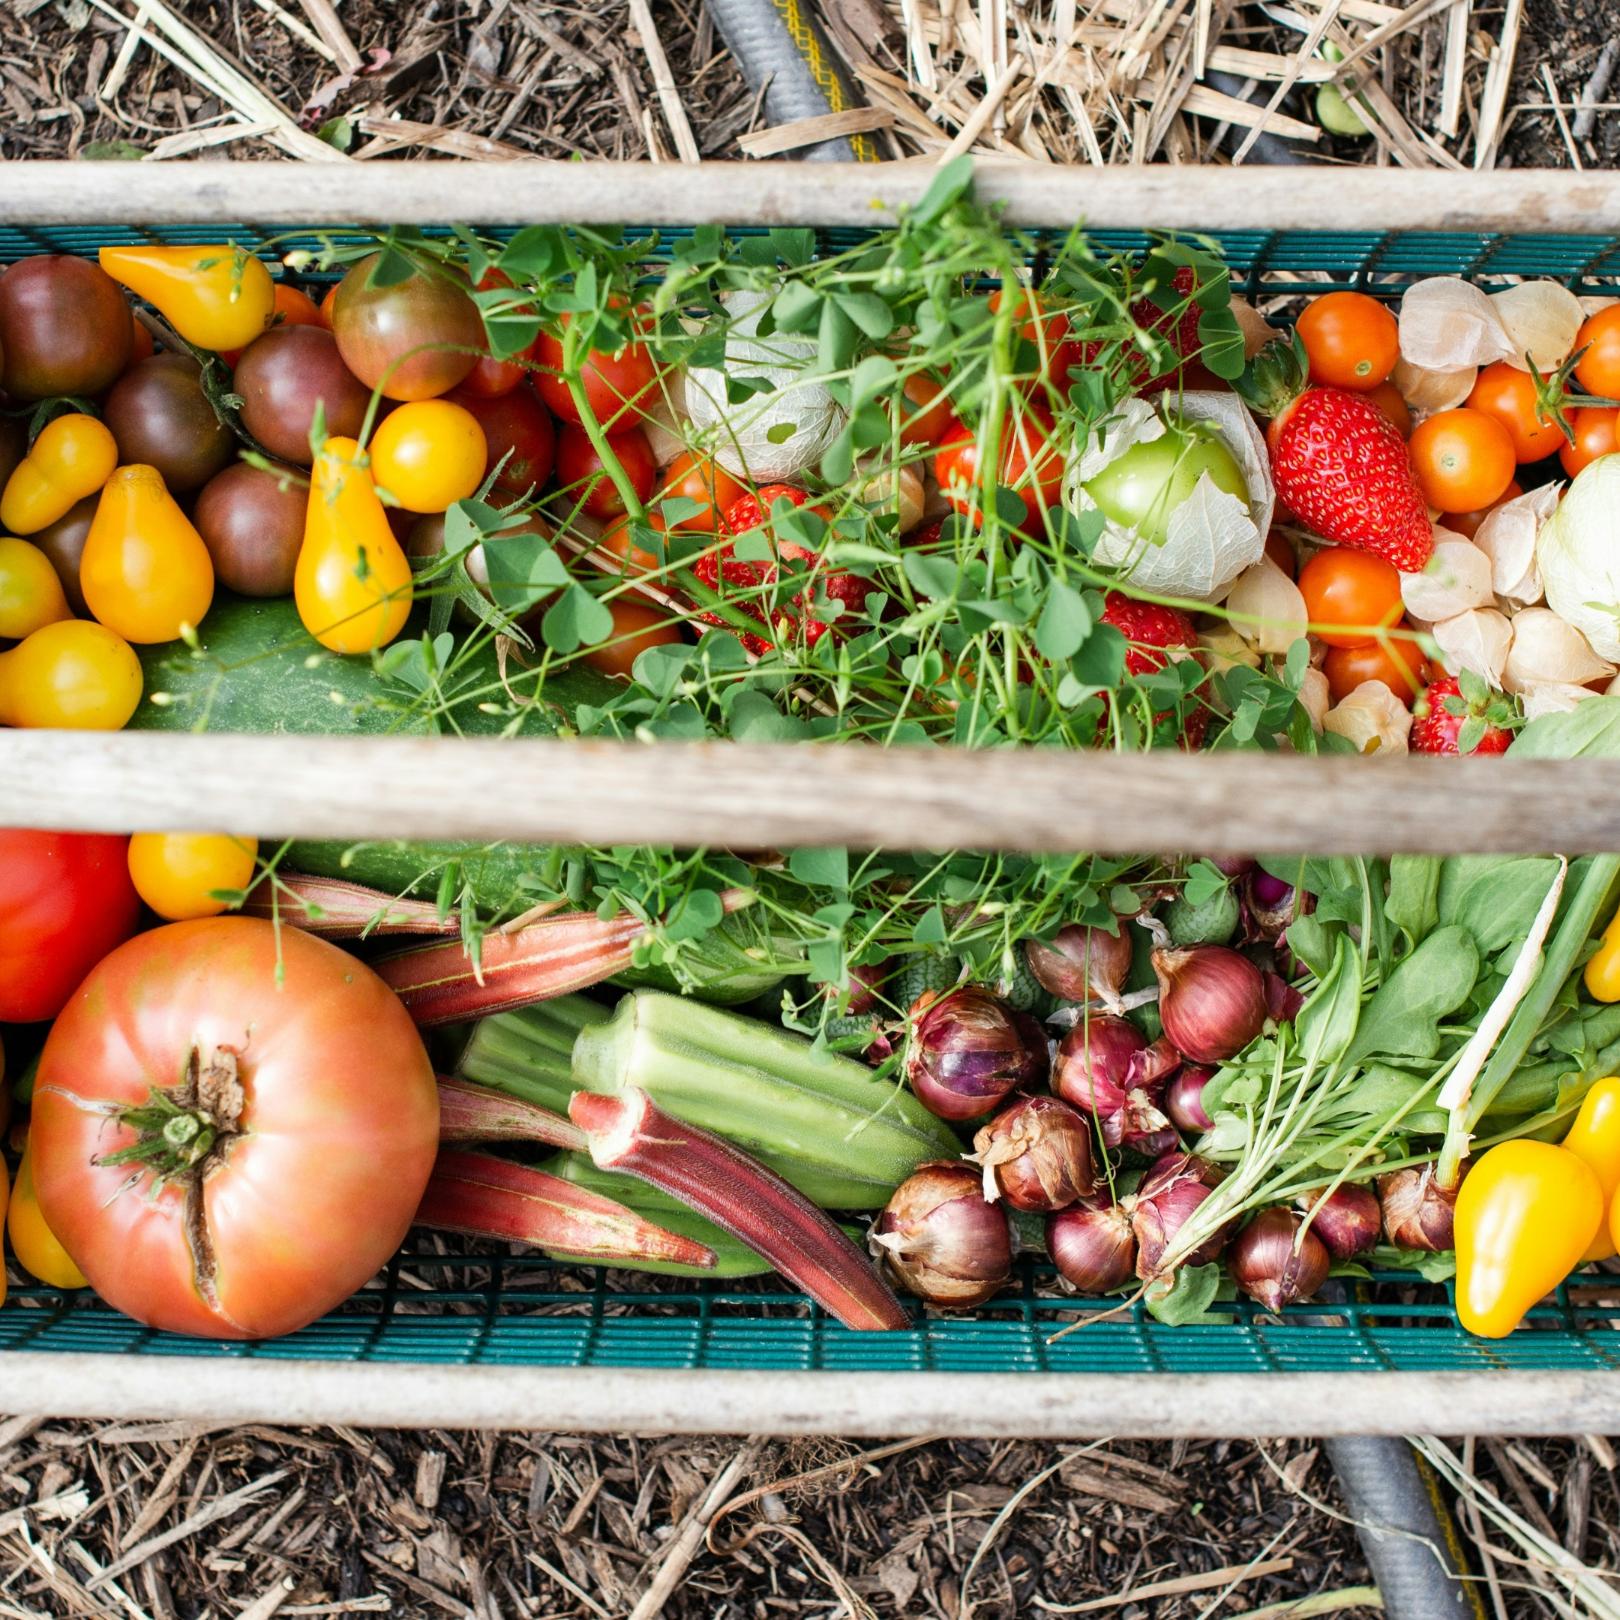 In einer Holzkiste liegen verschiedene Obst- und Gemüsesorten wie Tomaten, Erdbeeren, Zwiebeln, Rhabarber